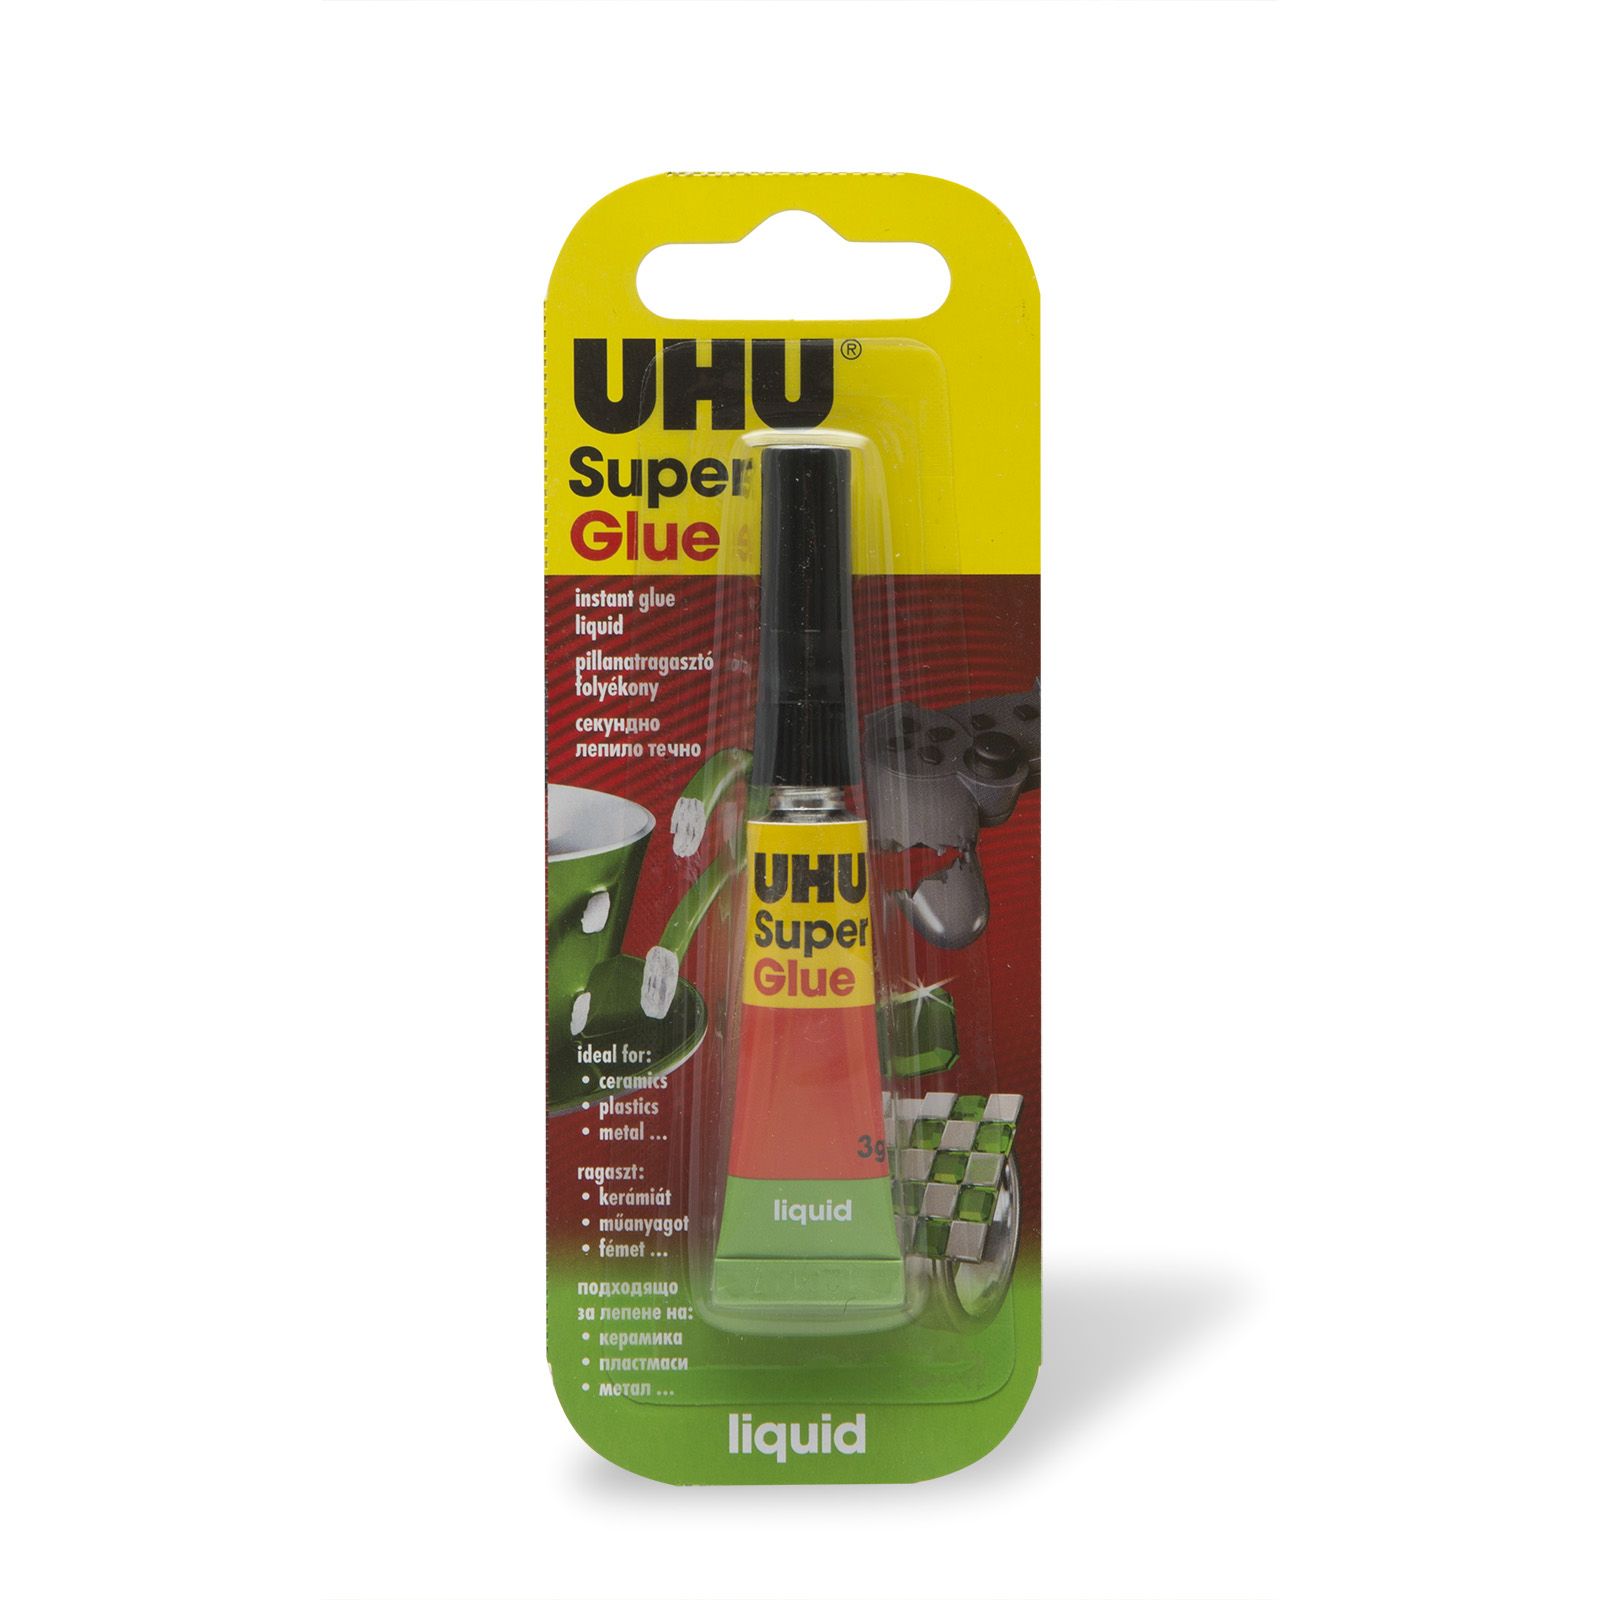 UHU Super Glue pillanatragasztó 3g liquid - U36700